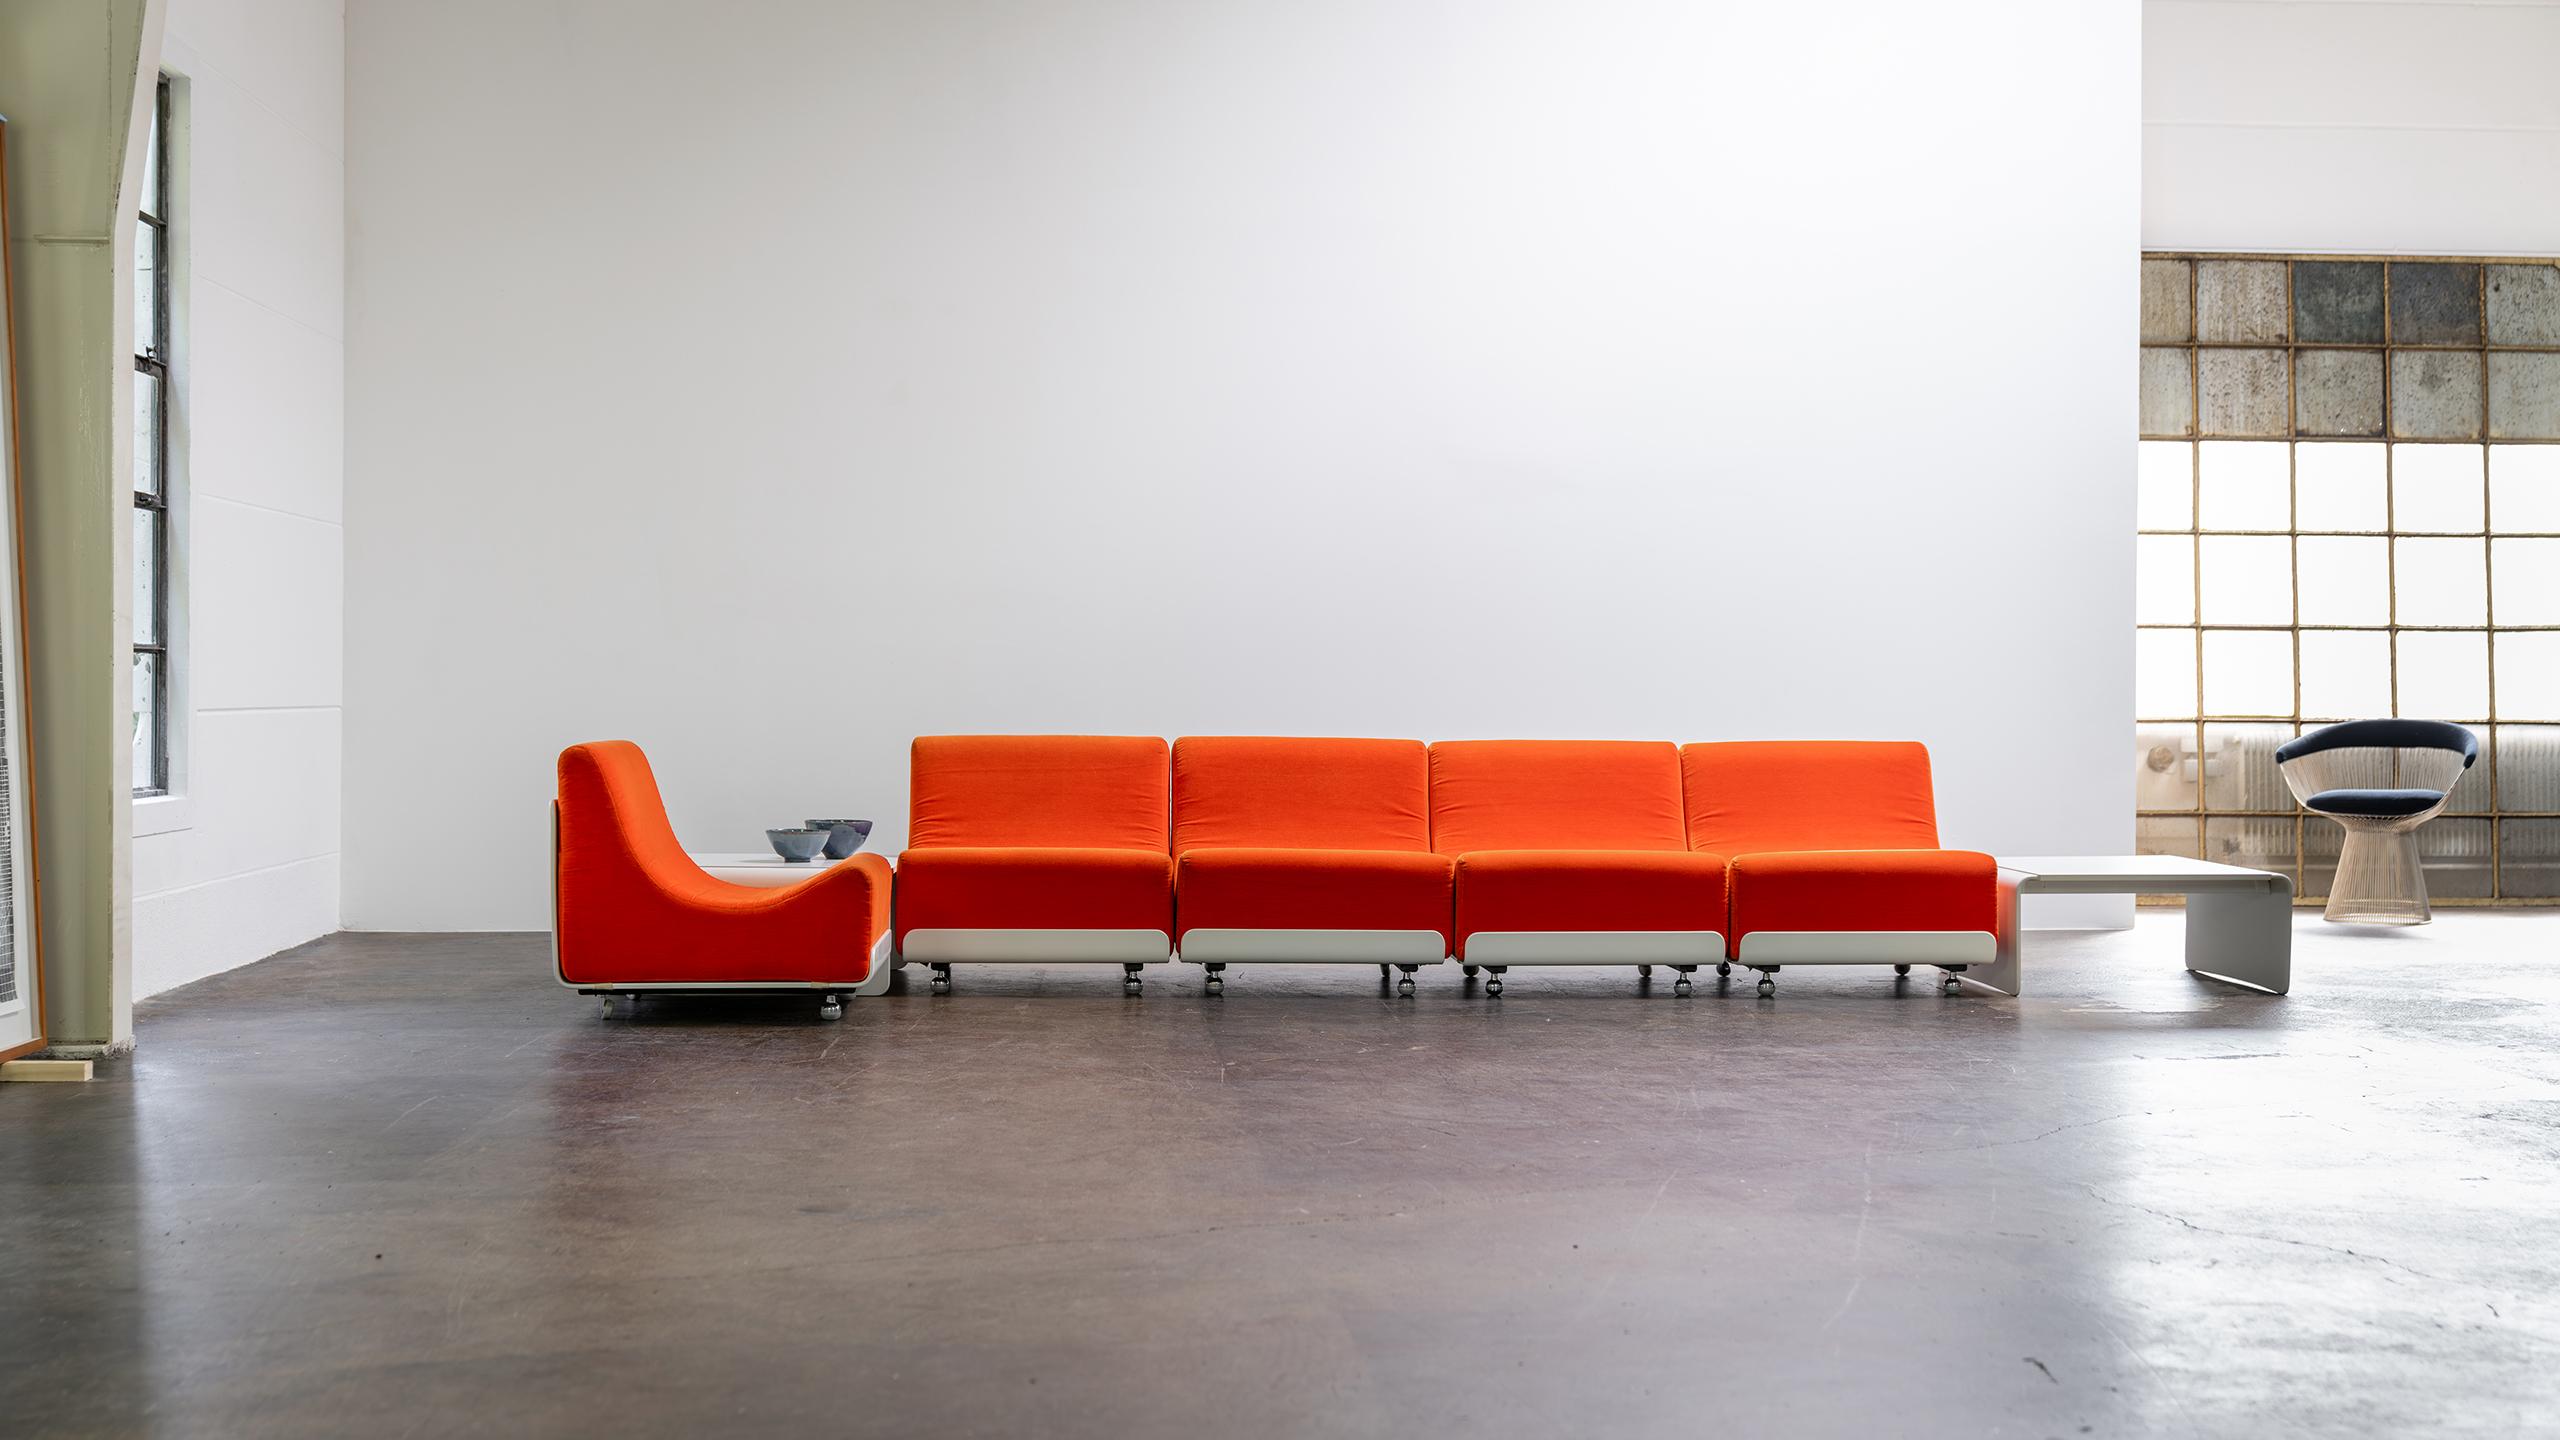 Luigi Colani, 1969 für COR, Deutschland - modulares Sofa Orbis mit original orange-rotem Nadelsamt. 
Der Stoff hat eine sehr angenehme Haptik, verschaffen Sie sich einen Eindruck auf den Detailfotos.

Das Set besteht aus 5 Sitzelementen (die